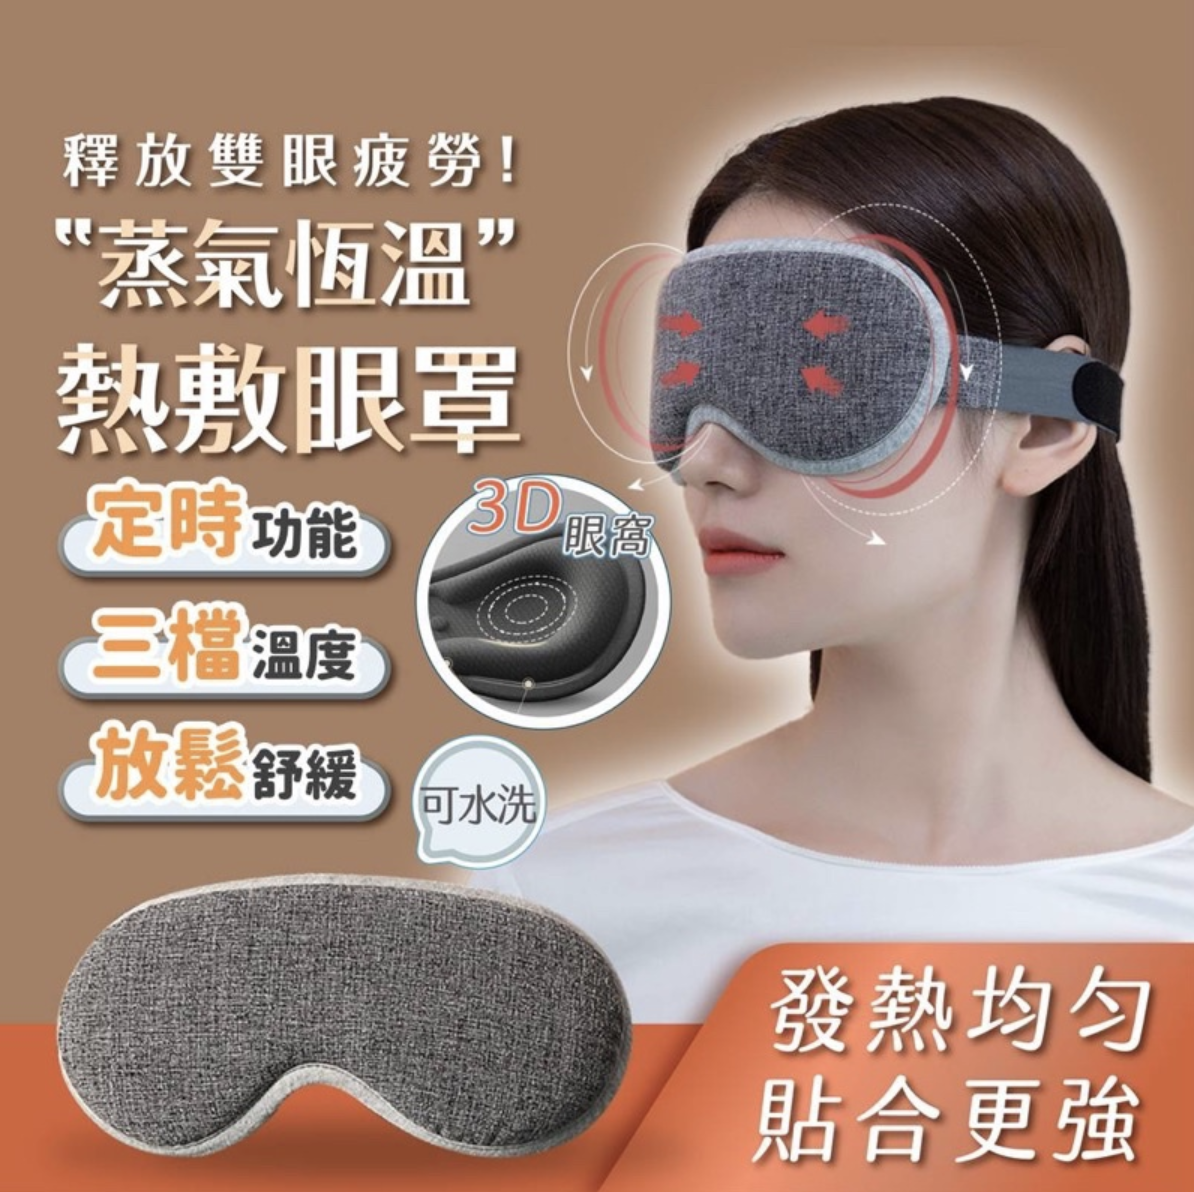 USB眼罩舒压按摩眼罩蒸气眼罩蒸汽眼罩热敷眼罩睡眠眼罩眼睛热敷发热眼罩加热眼罩眼伦敦灰